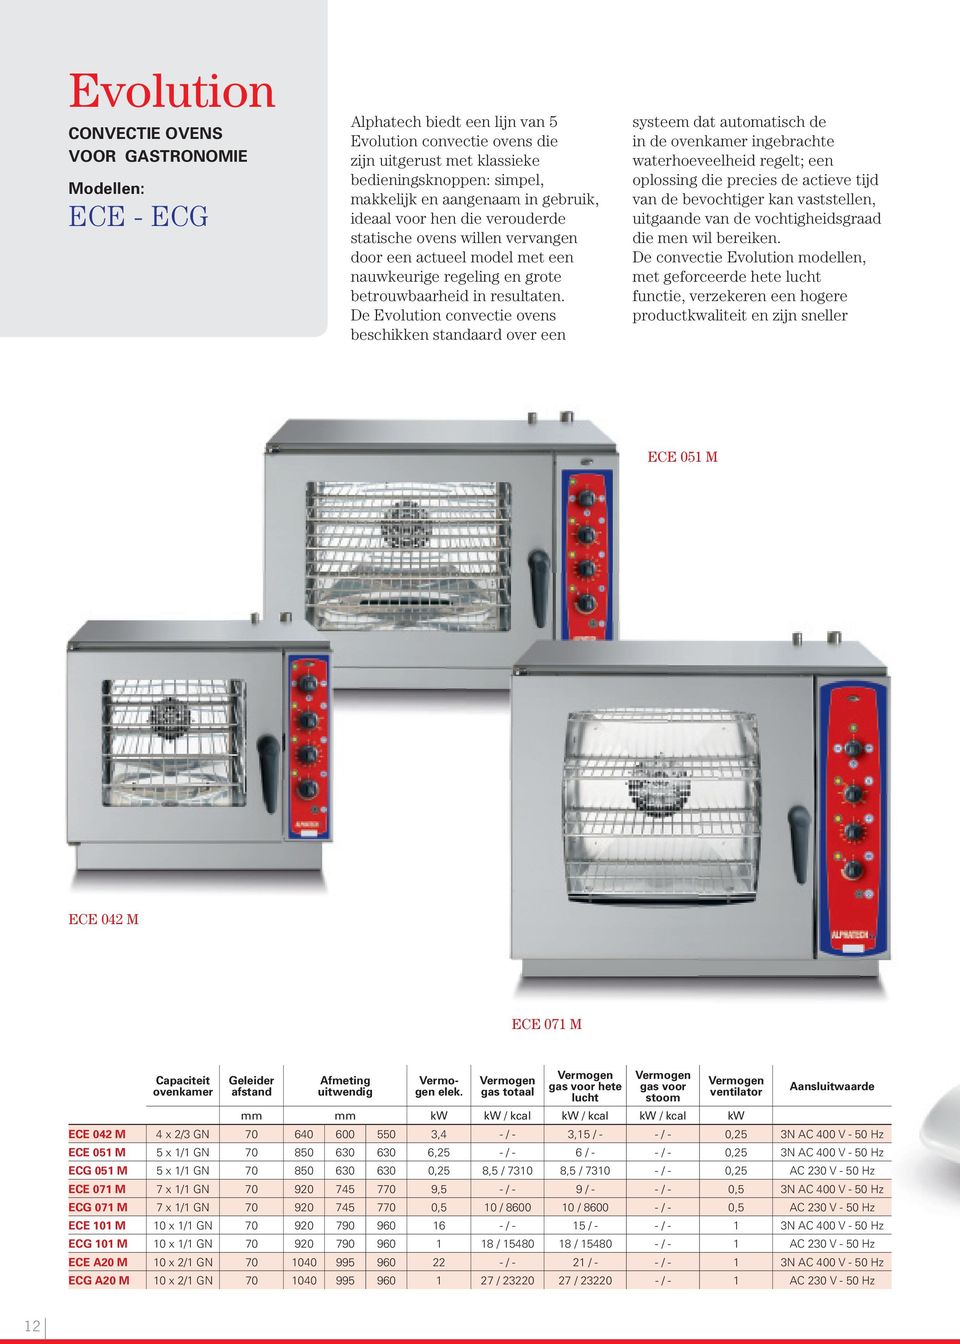 De Evolution convectie ovens beschikken standaard over een systeem dat automatisch de in de ovenkamer ingebrachte waterhoeveelheid regelt; een oplossing die precies de actieve tijd van de bevochtiger